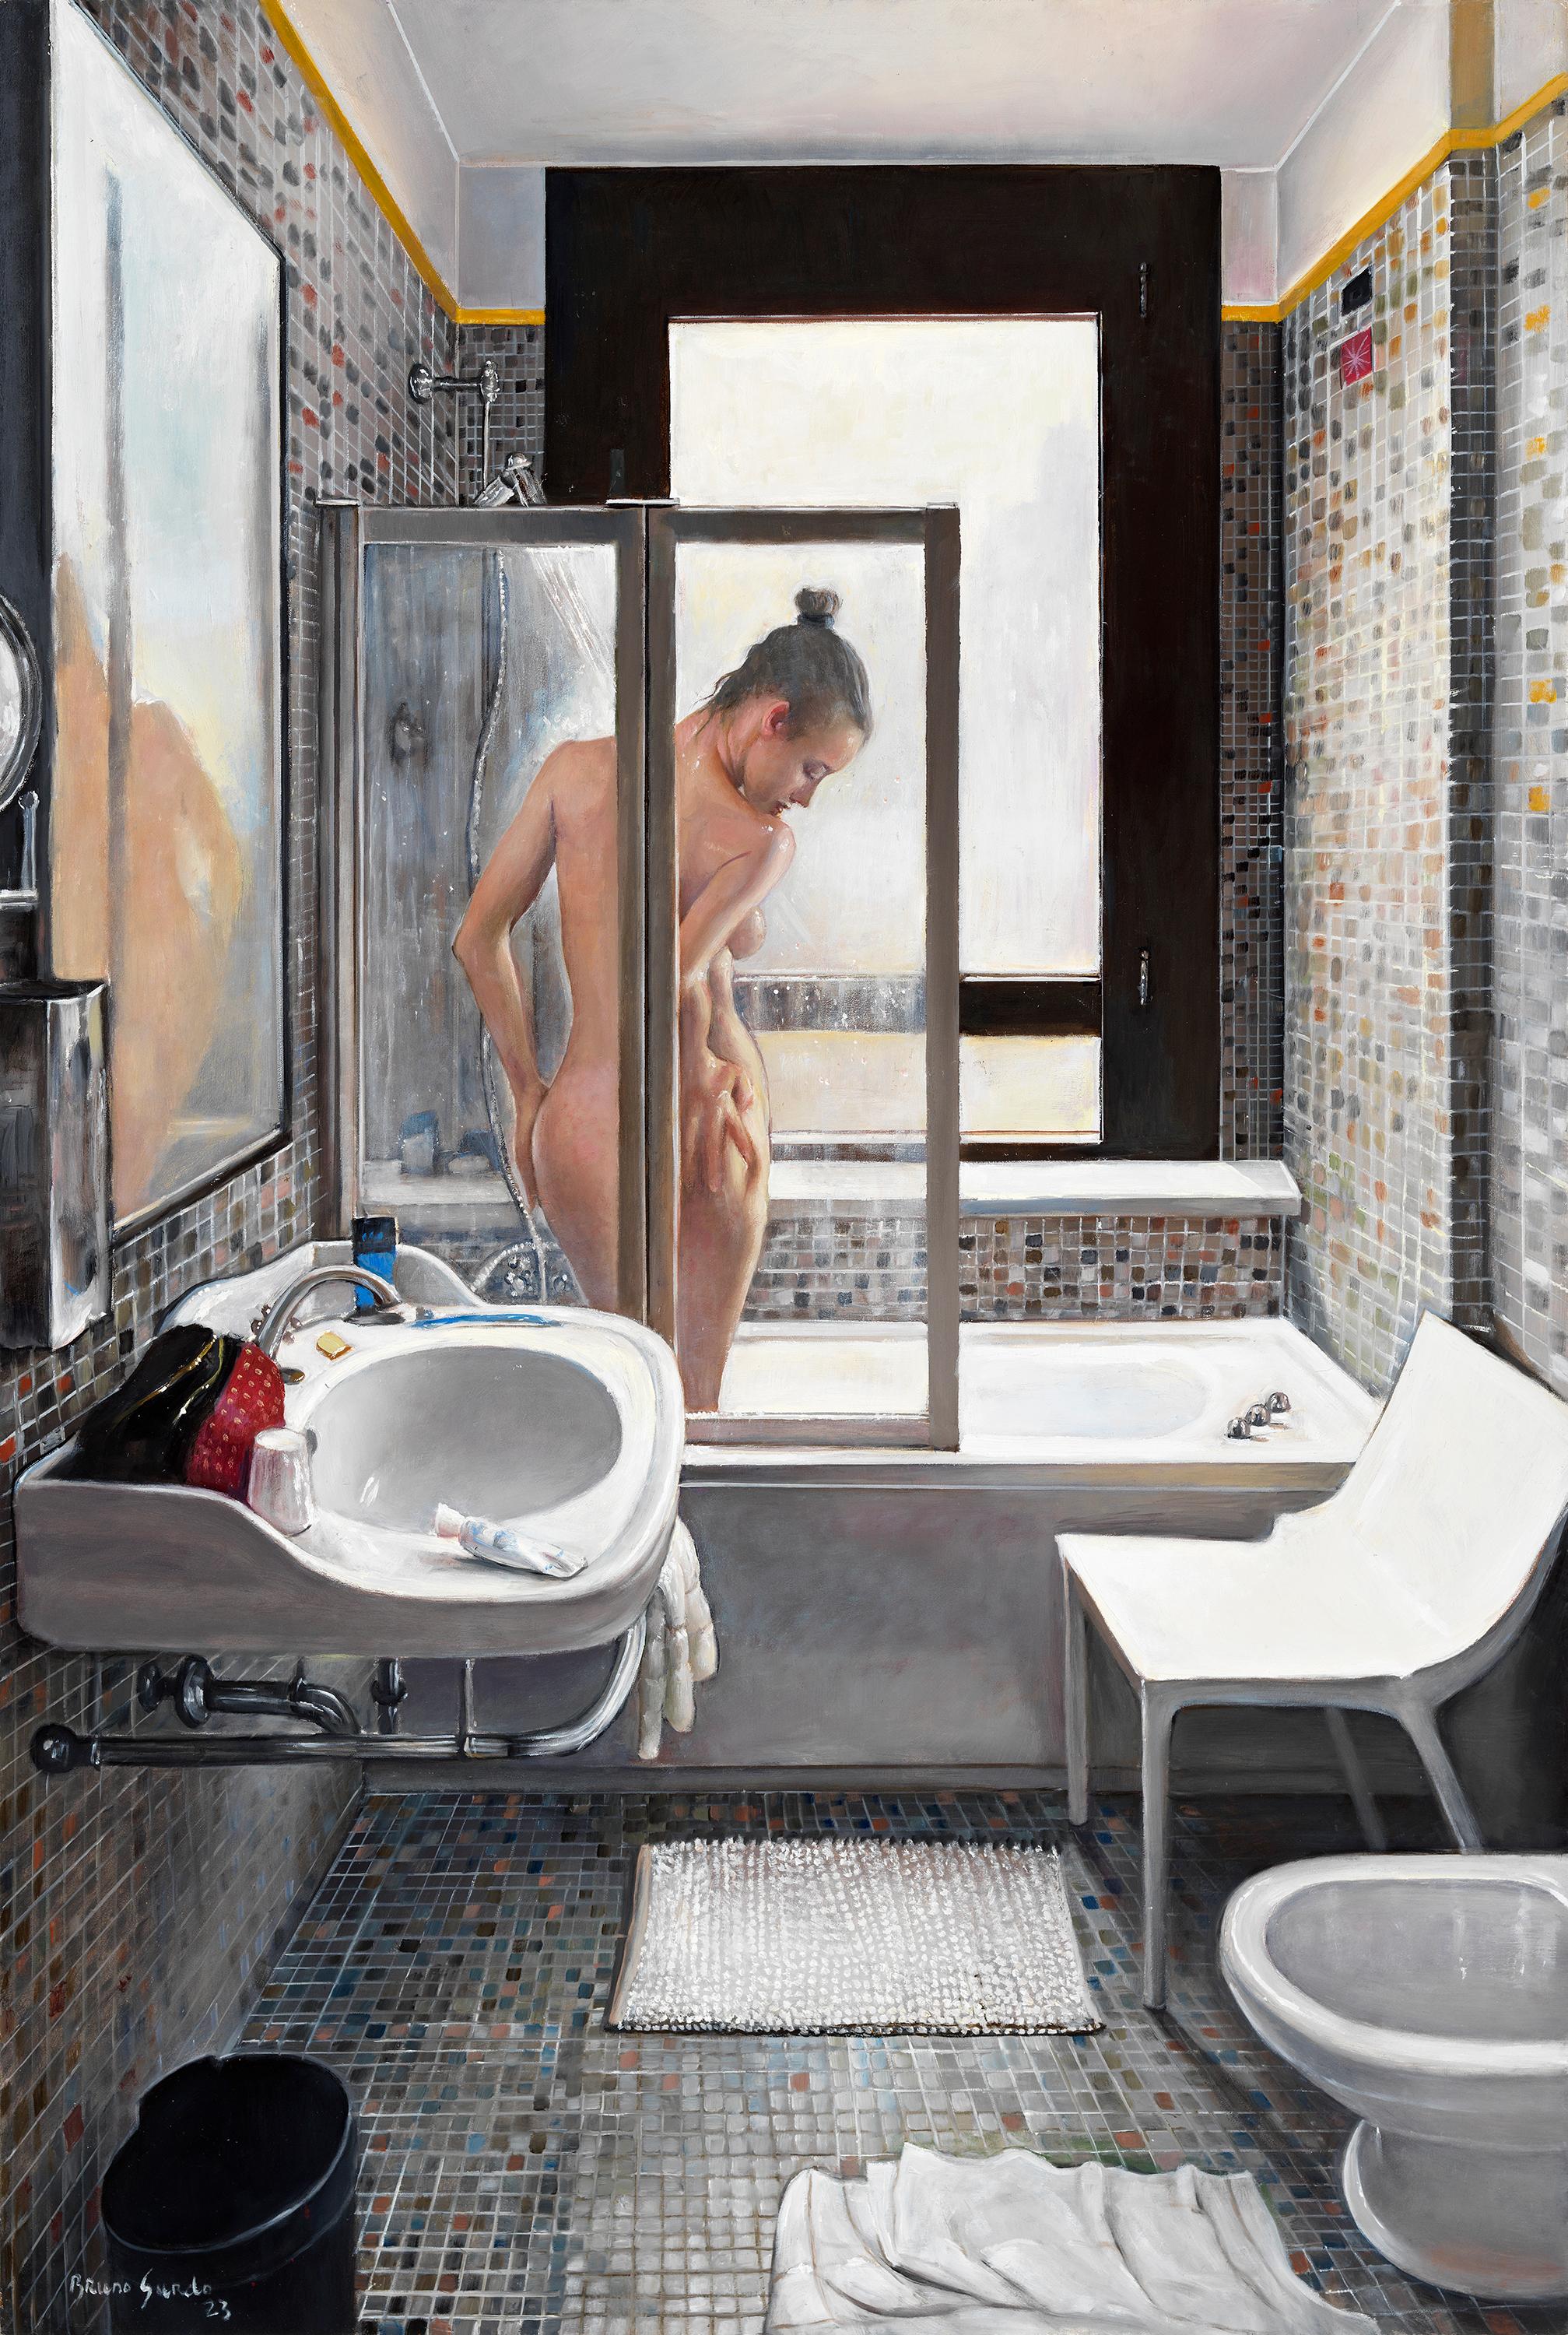 Bruno Surdo Nude Painting – Venezianische Dusche -  Aktfrau, die in einem KachelBad in der Badewanne zeigt, Original Ölgemälde